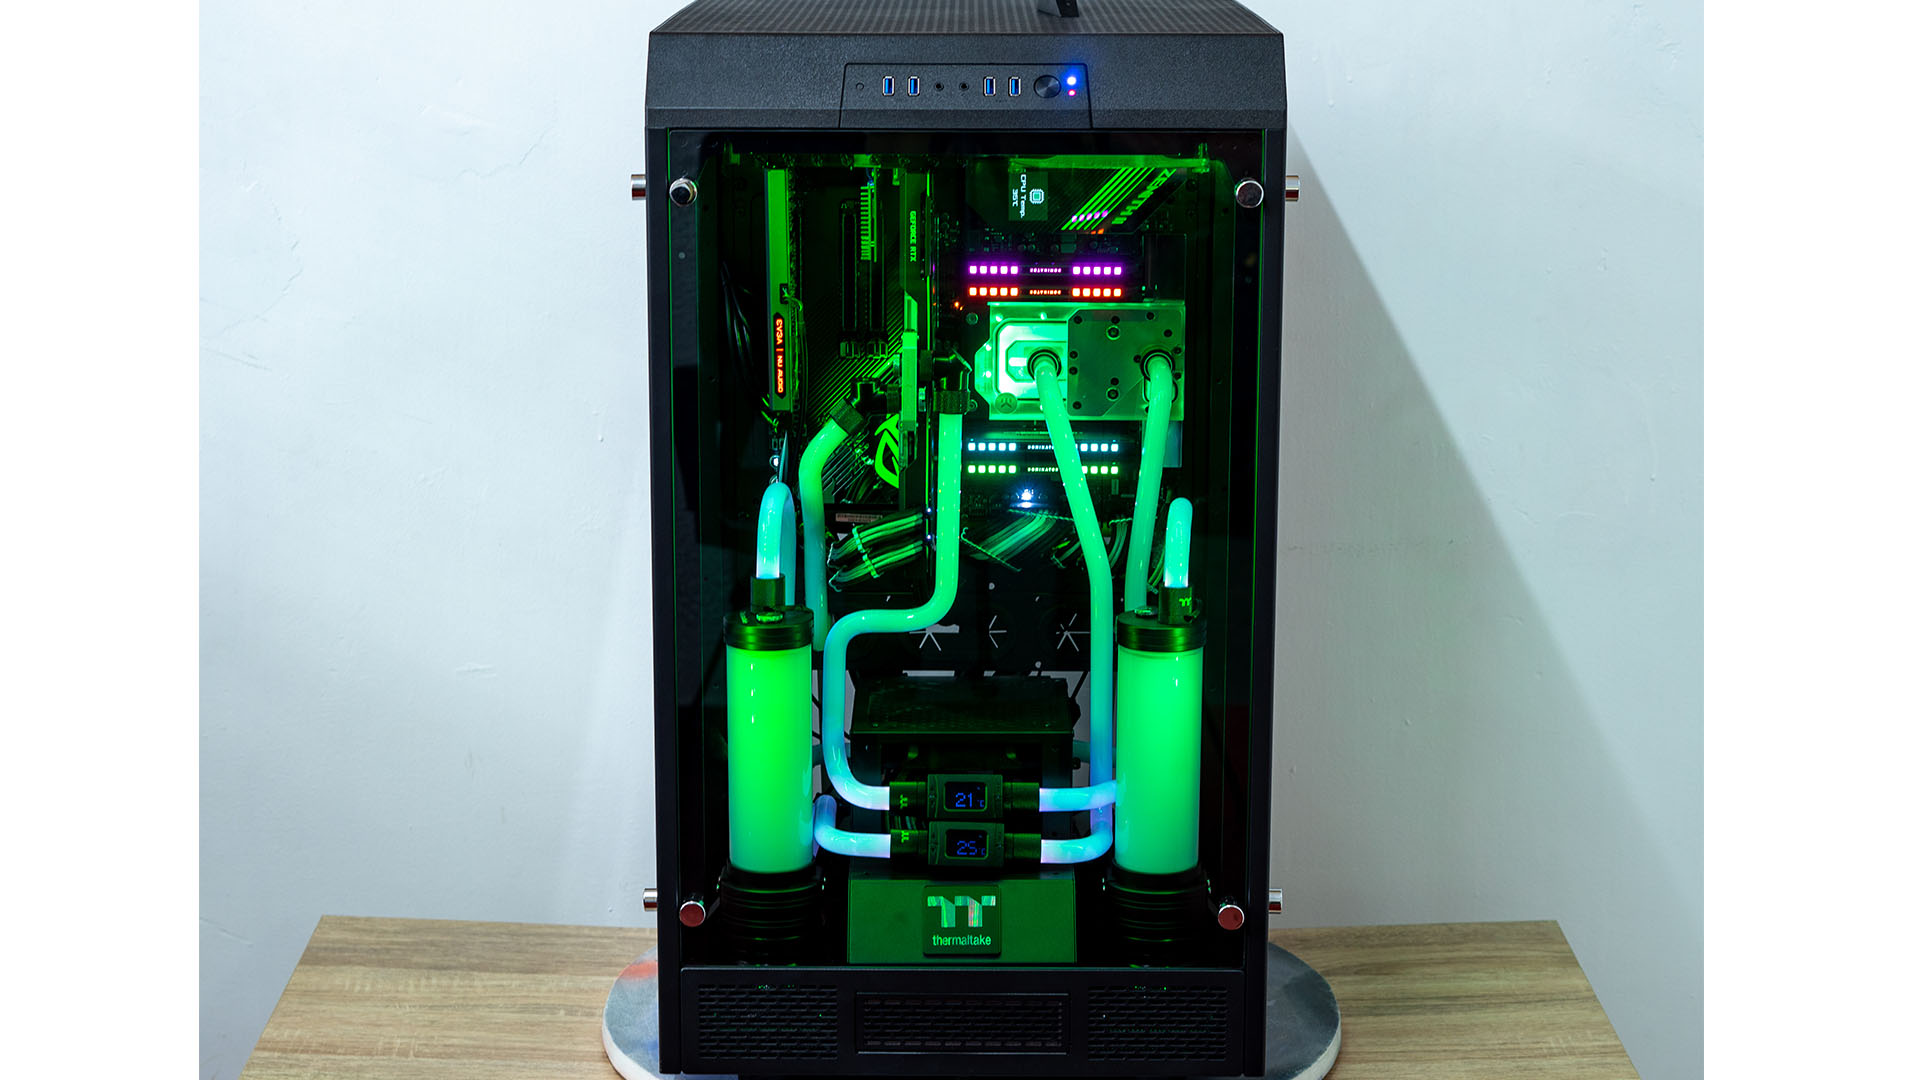 Der AMD Threadripper Gaming-PC mit grüner Manschette und RGB-Beleuchtung